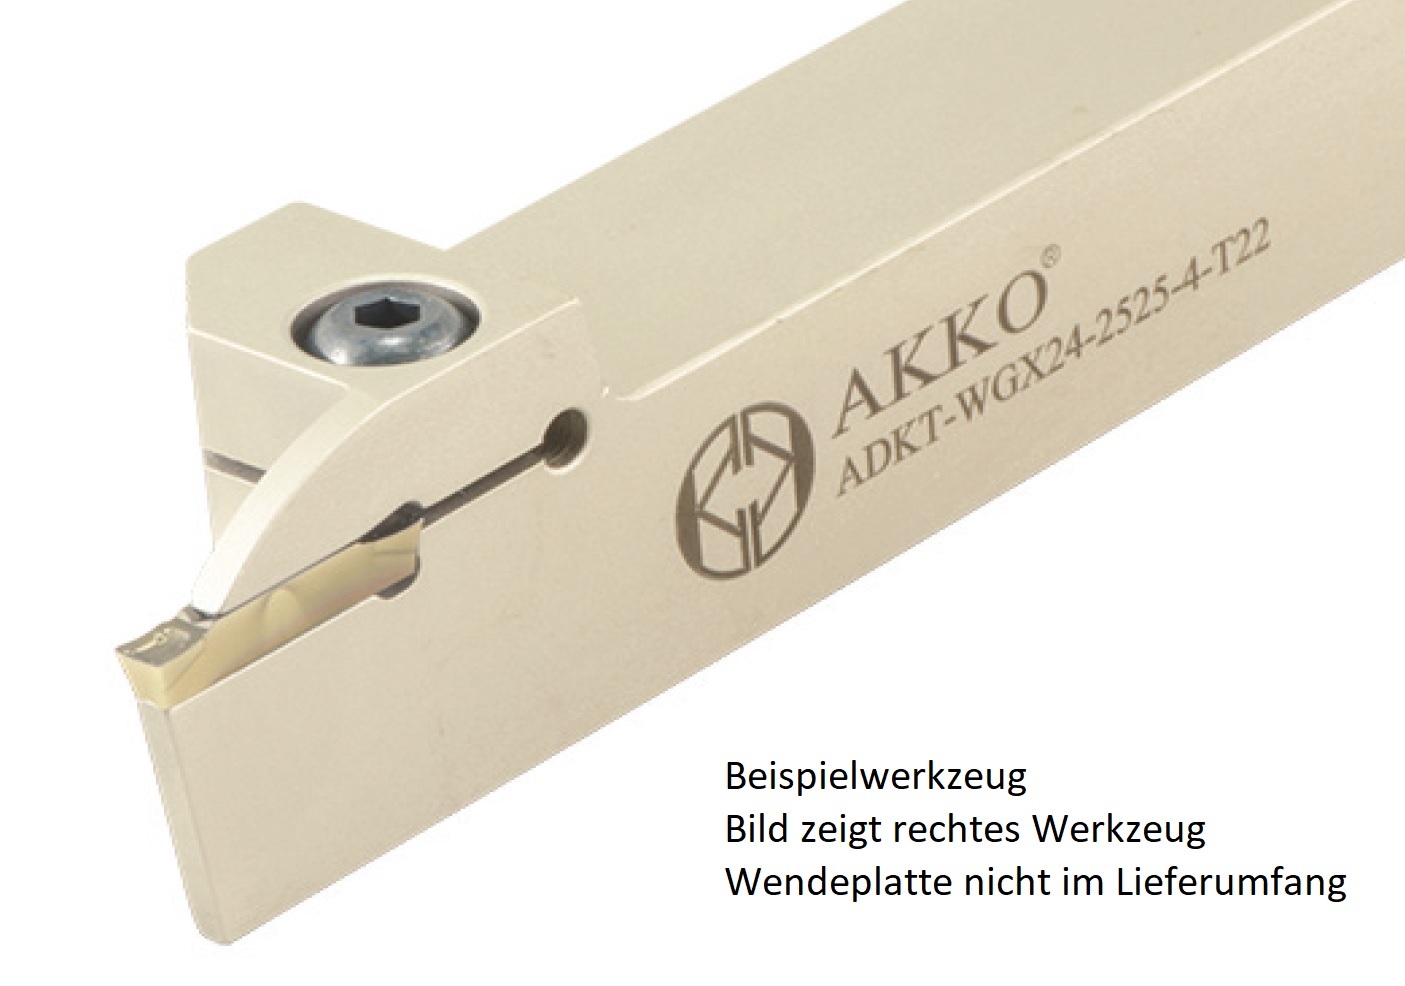 AKKO-Außen-Stechhalter, kompatibel mit Walter-Stechplatte GX24-3
links, Schaft 20 x 20 mm